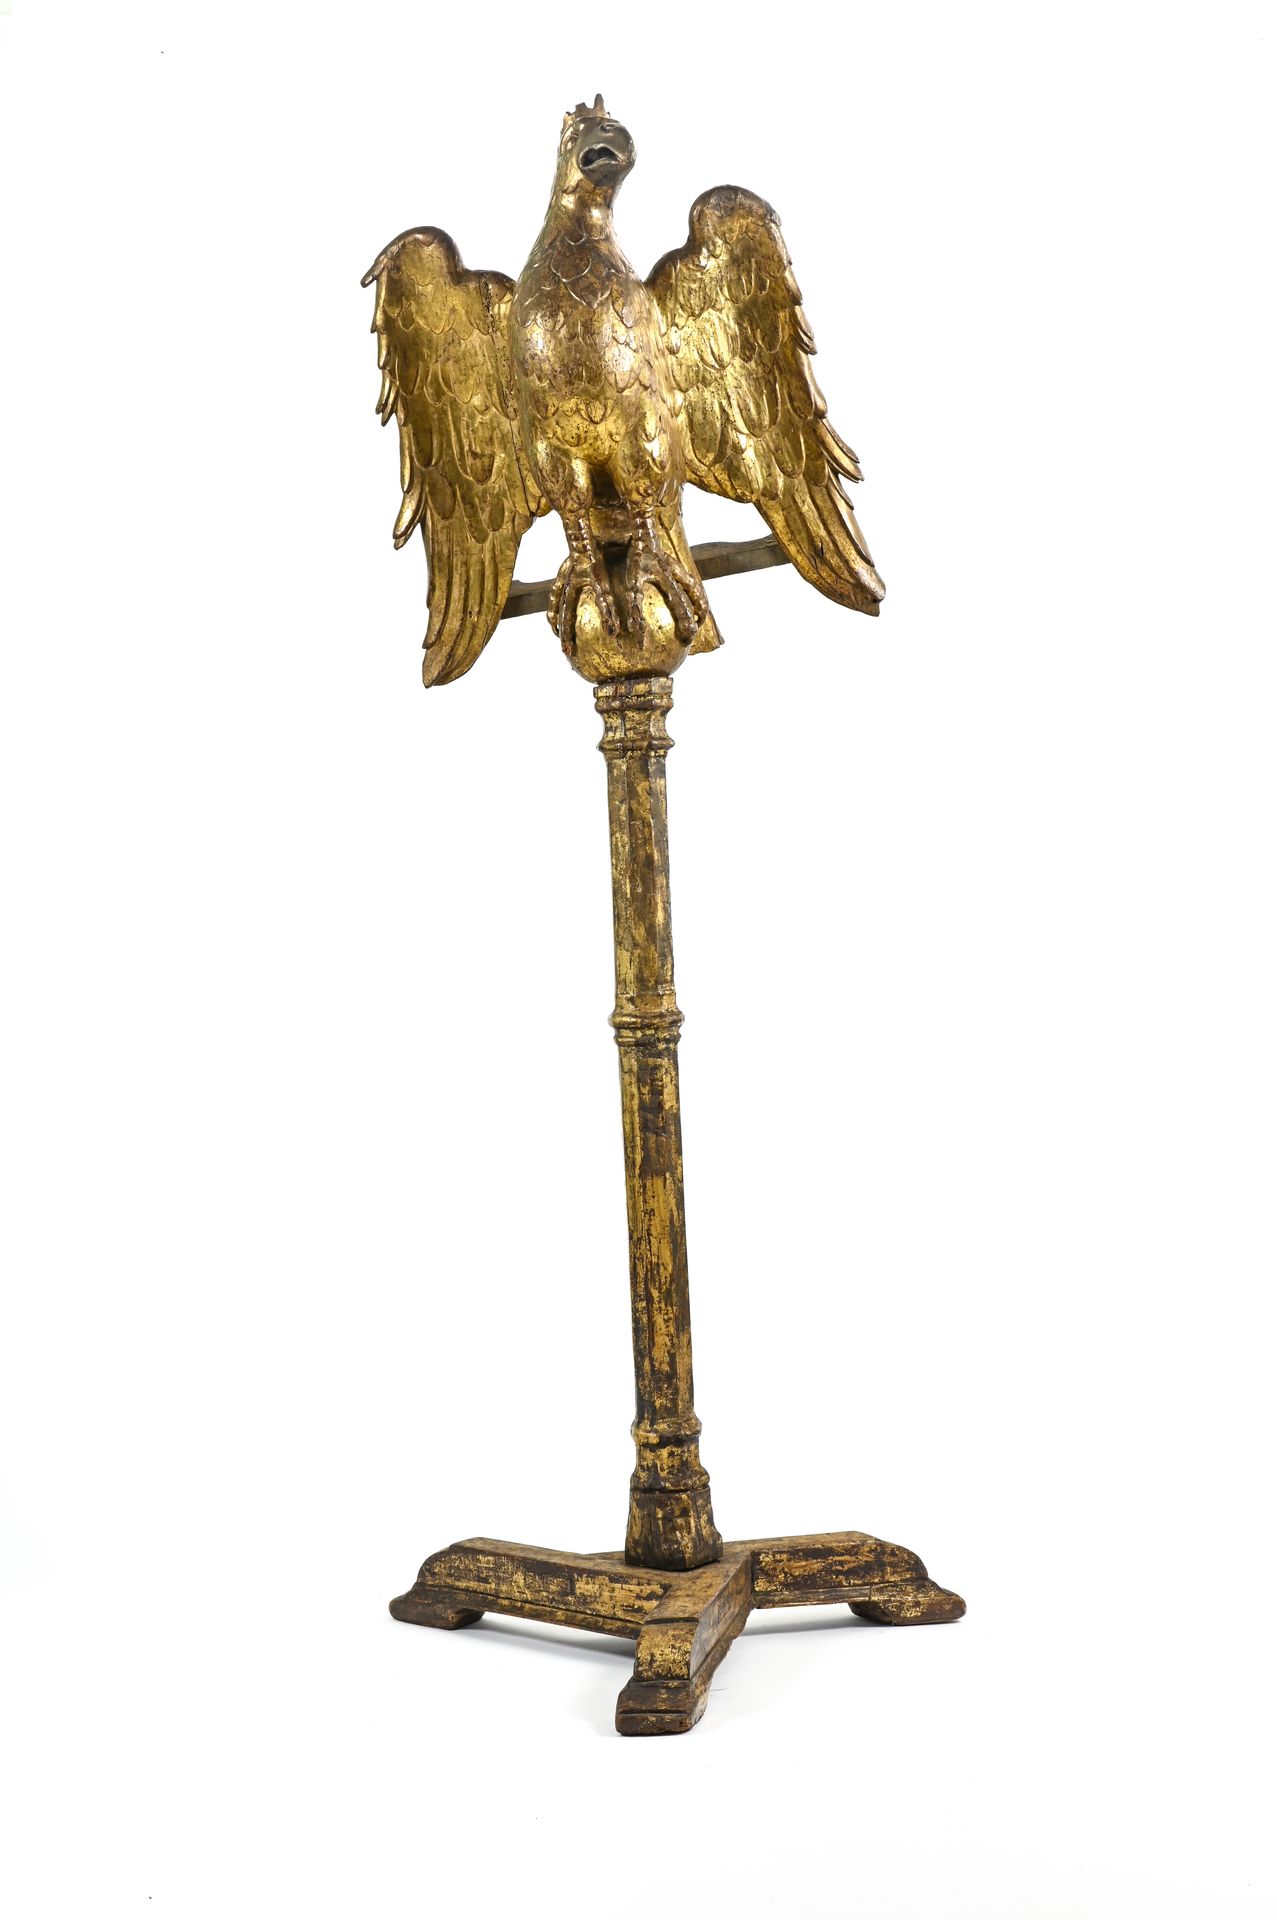 Lutrin monumental à l'aigle OBRA DEL SIGLO XVIII

Atril monumental con águila


&hellip;